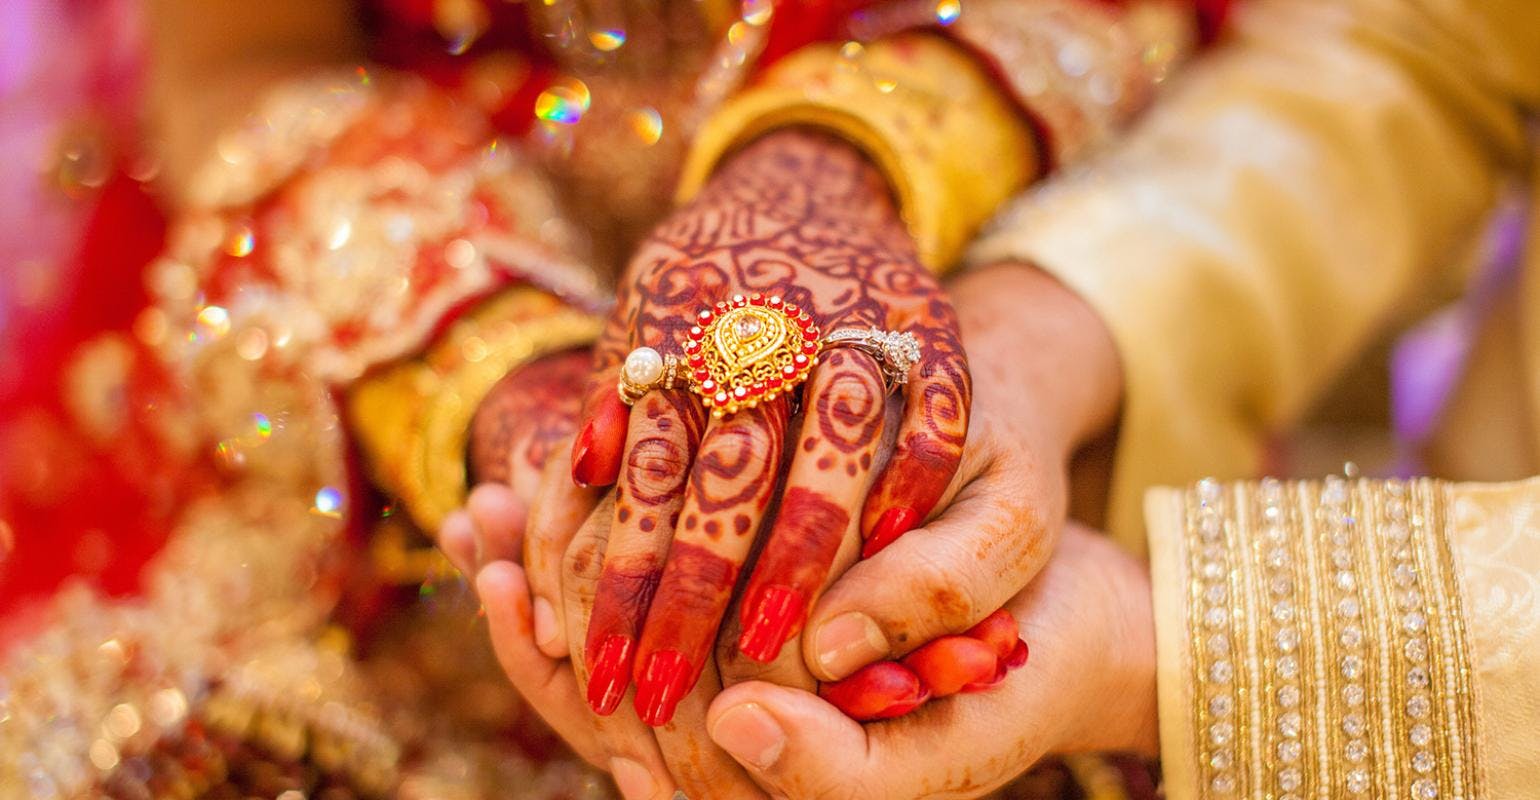 Indian_Wedding_Hands_2019_0.jpg